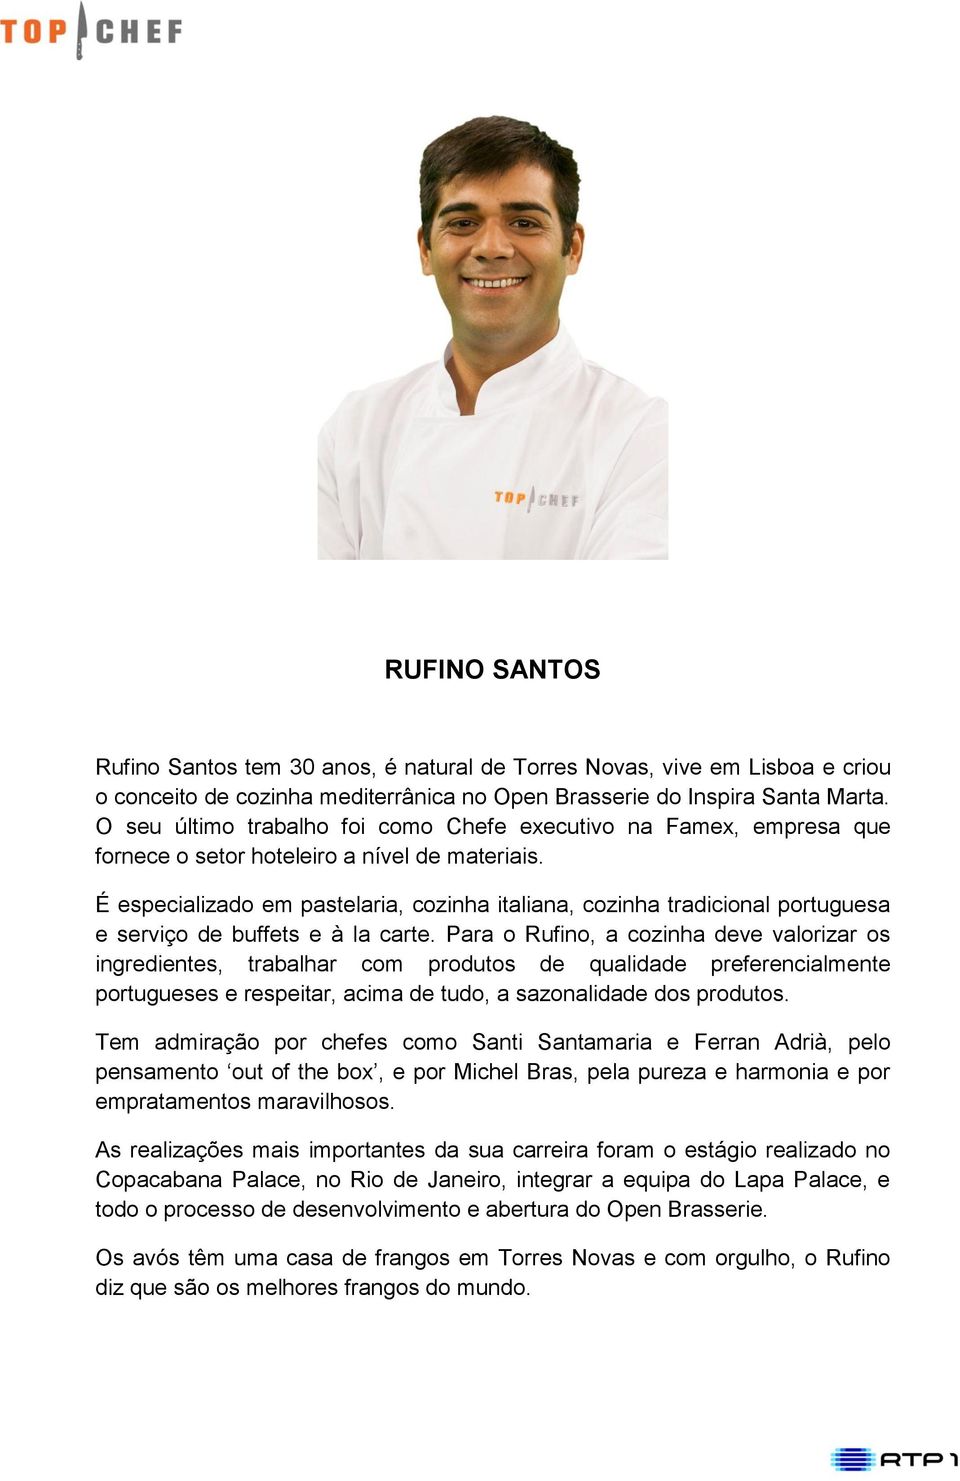 É especializado em pastelaria, cozinha italiana, cozinha tradicional portuguesa e serviço de buffets e à la carte.